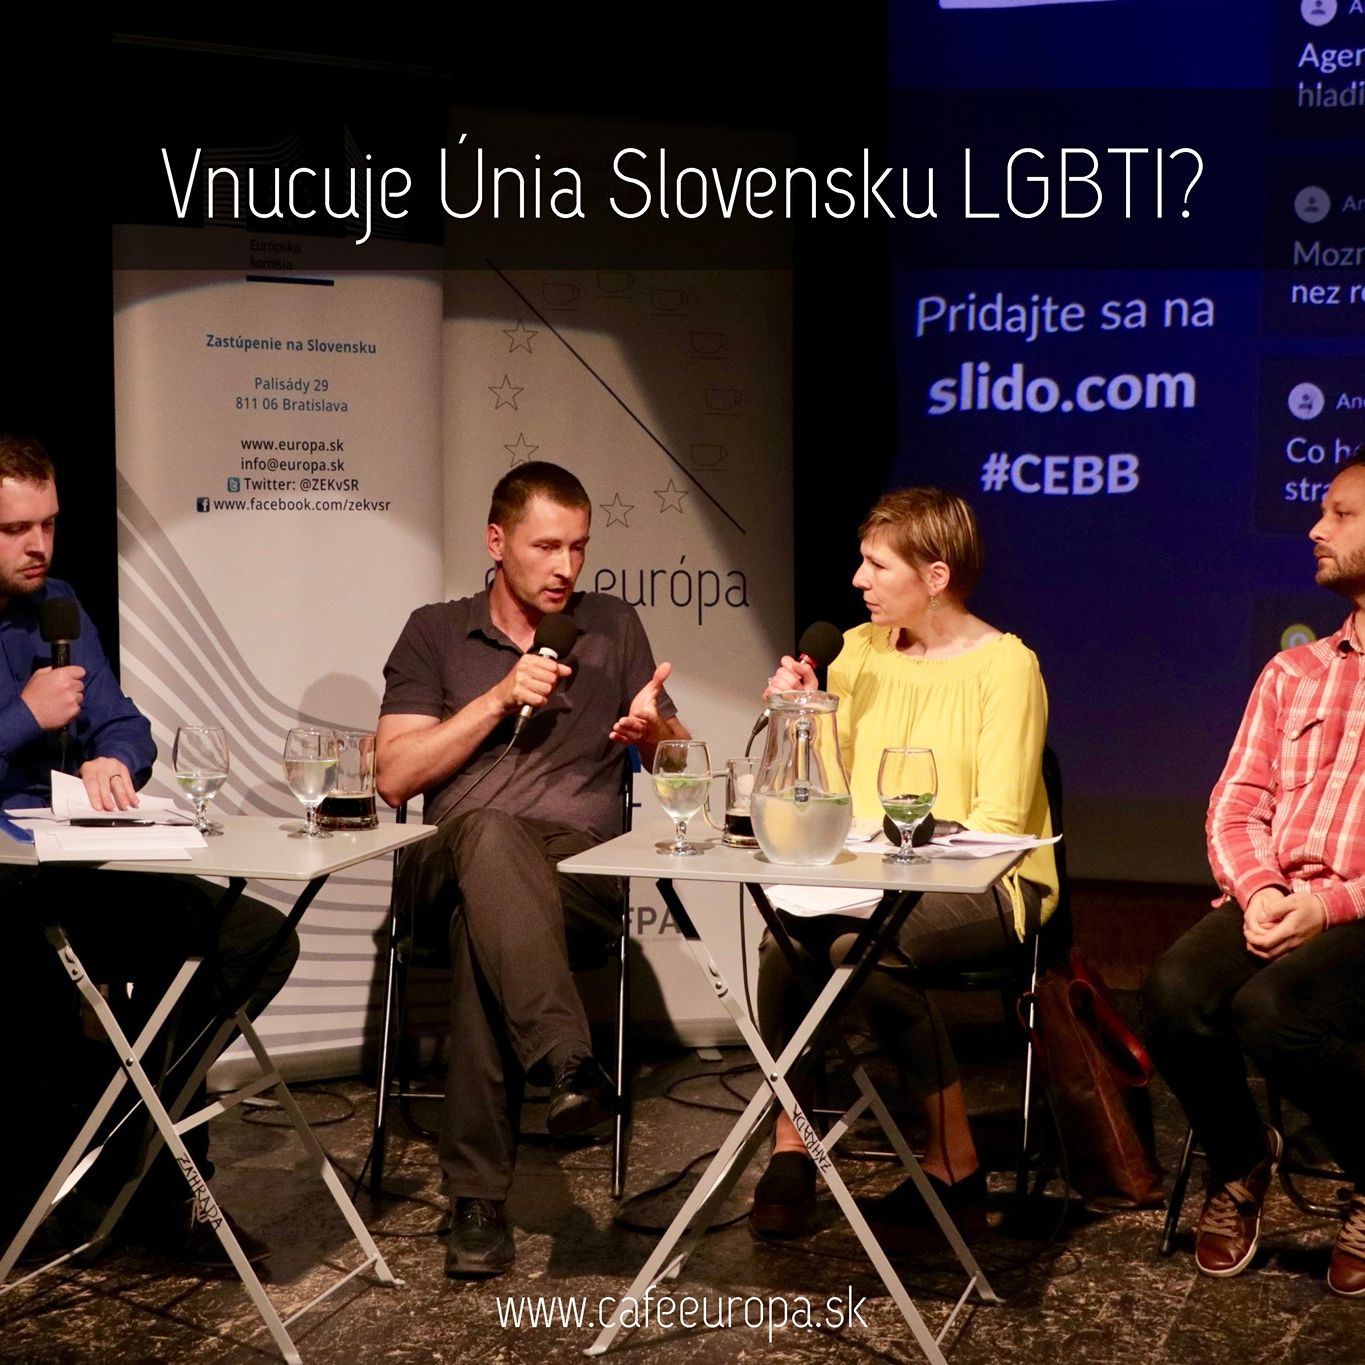 Podcast | Vnucuje Únia Slovensku LGBT?